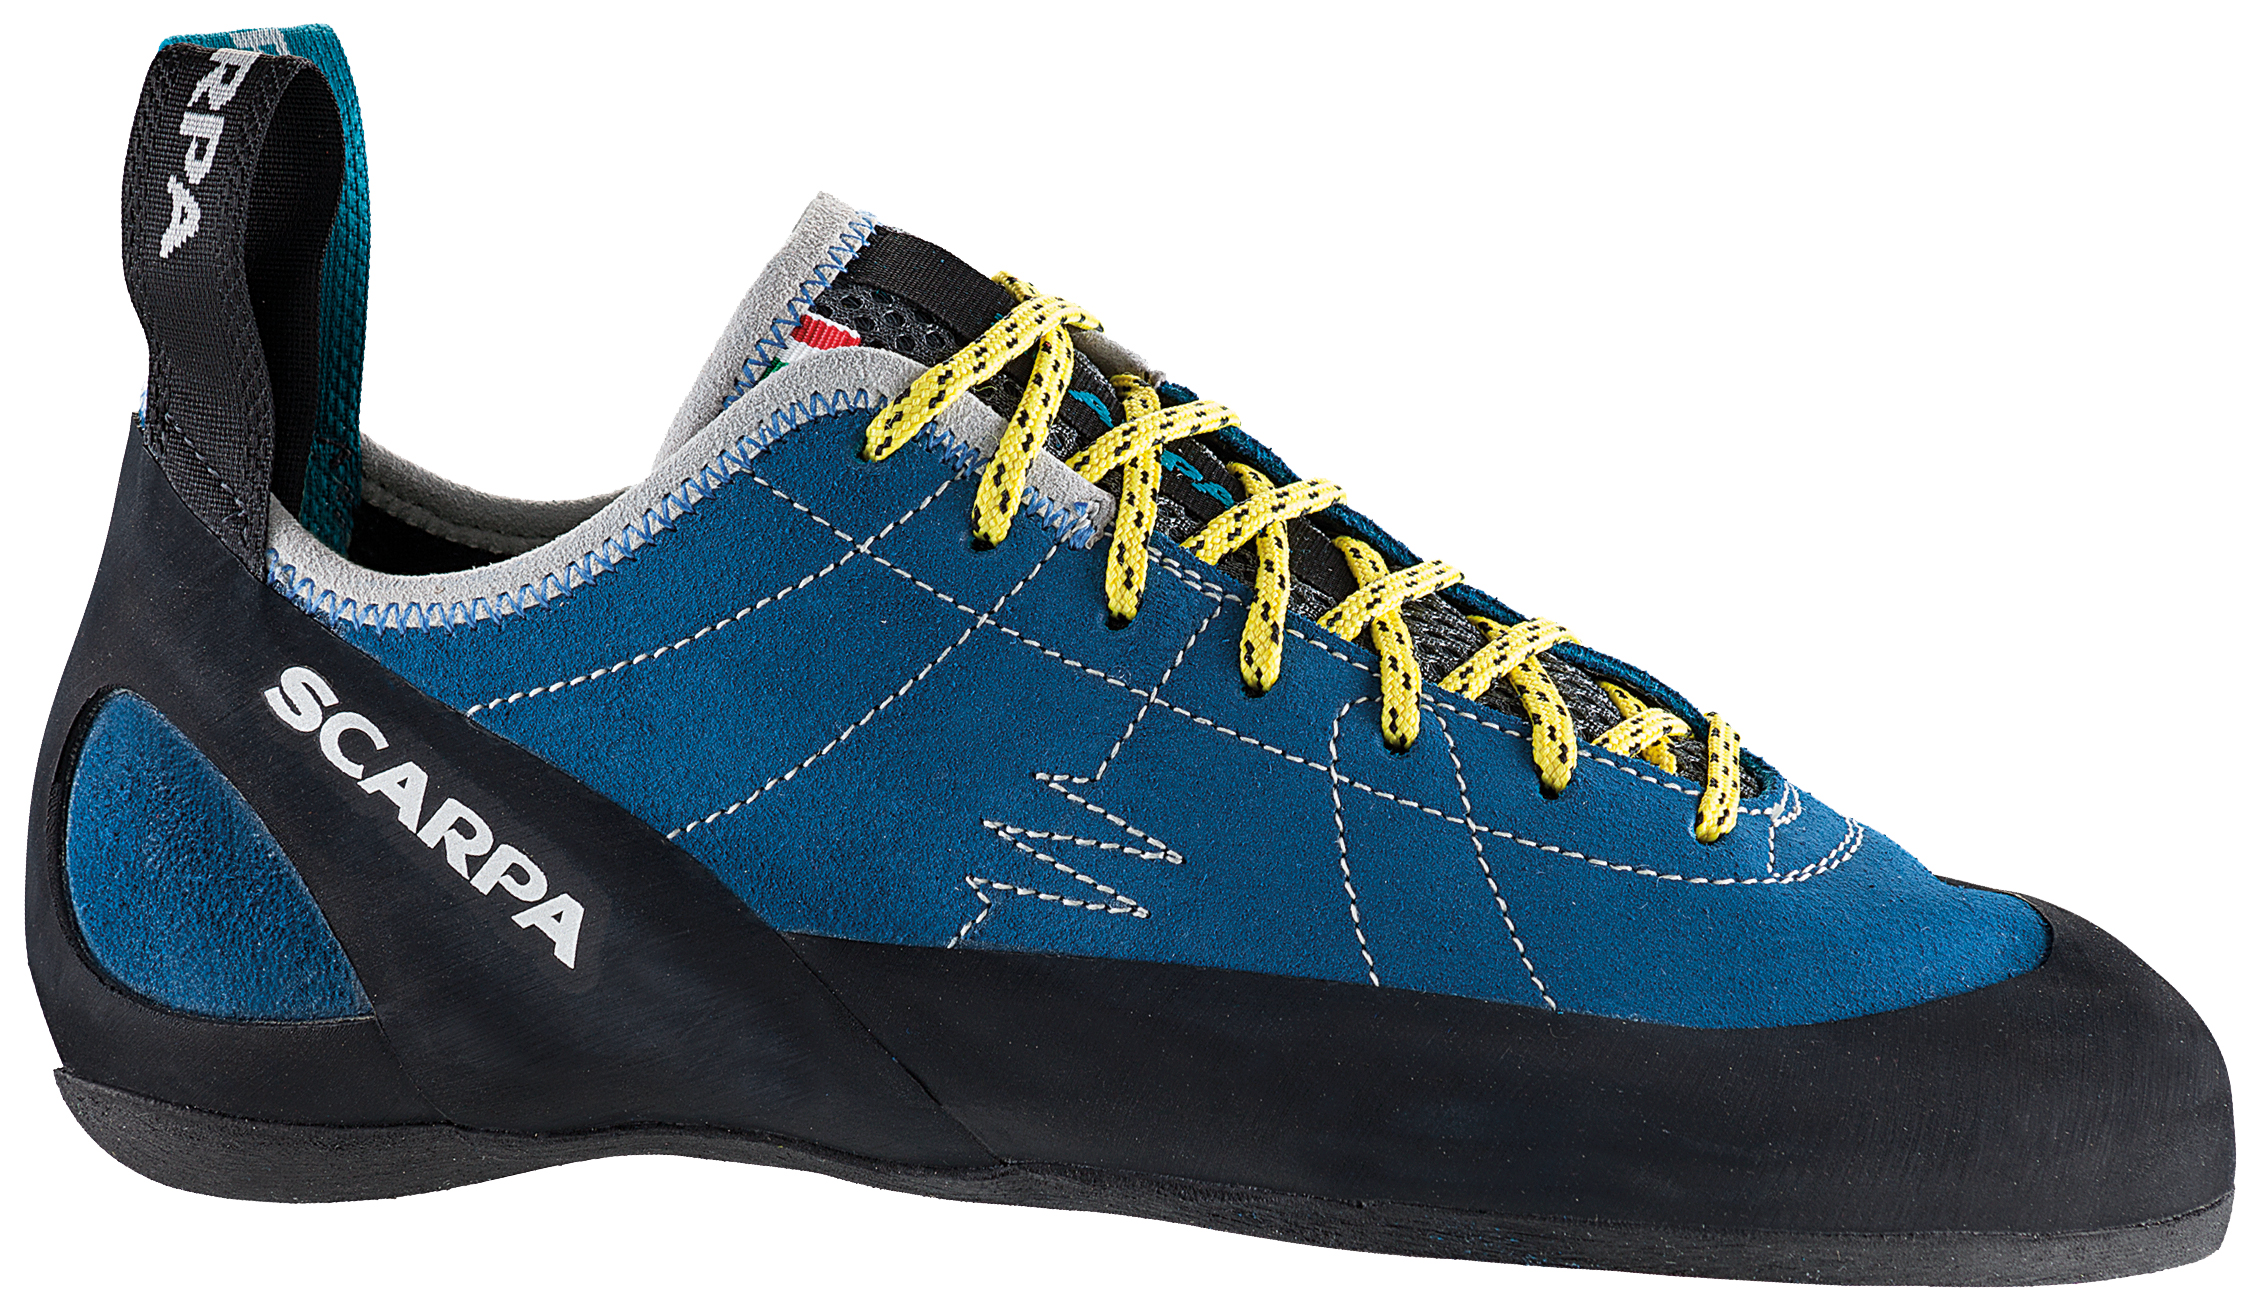 Scarpa Helix Rock Shoes - Men's